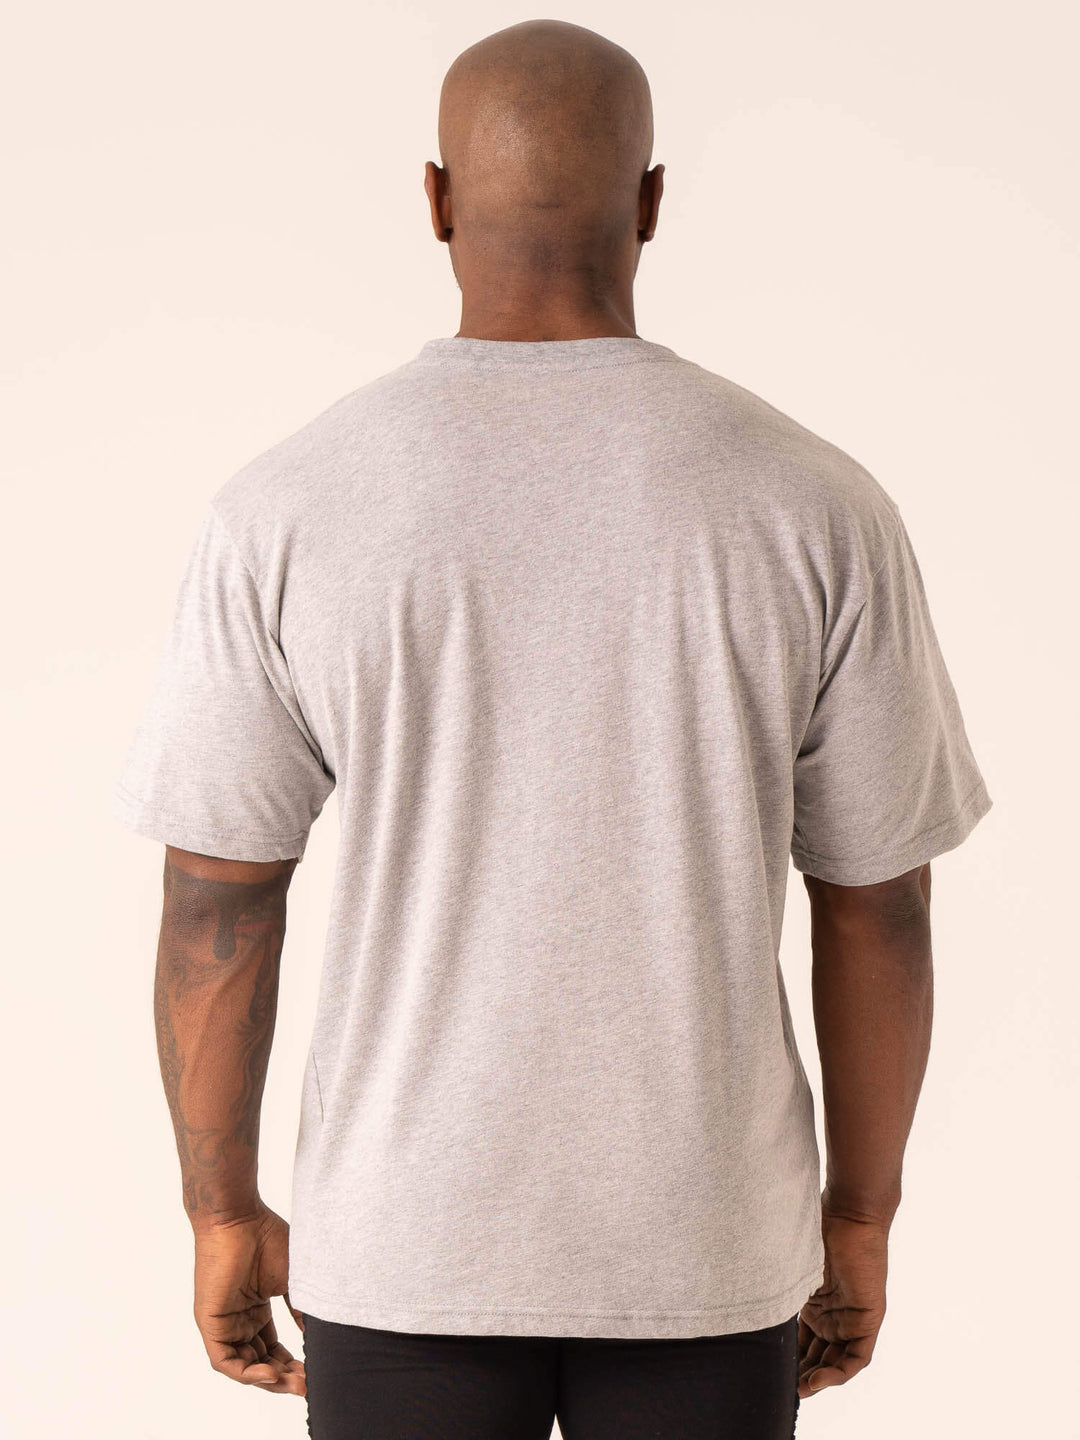 Lifting Club T-Shirt - Grey Marl Clothing Ryderwear 